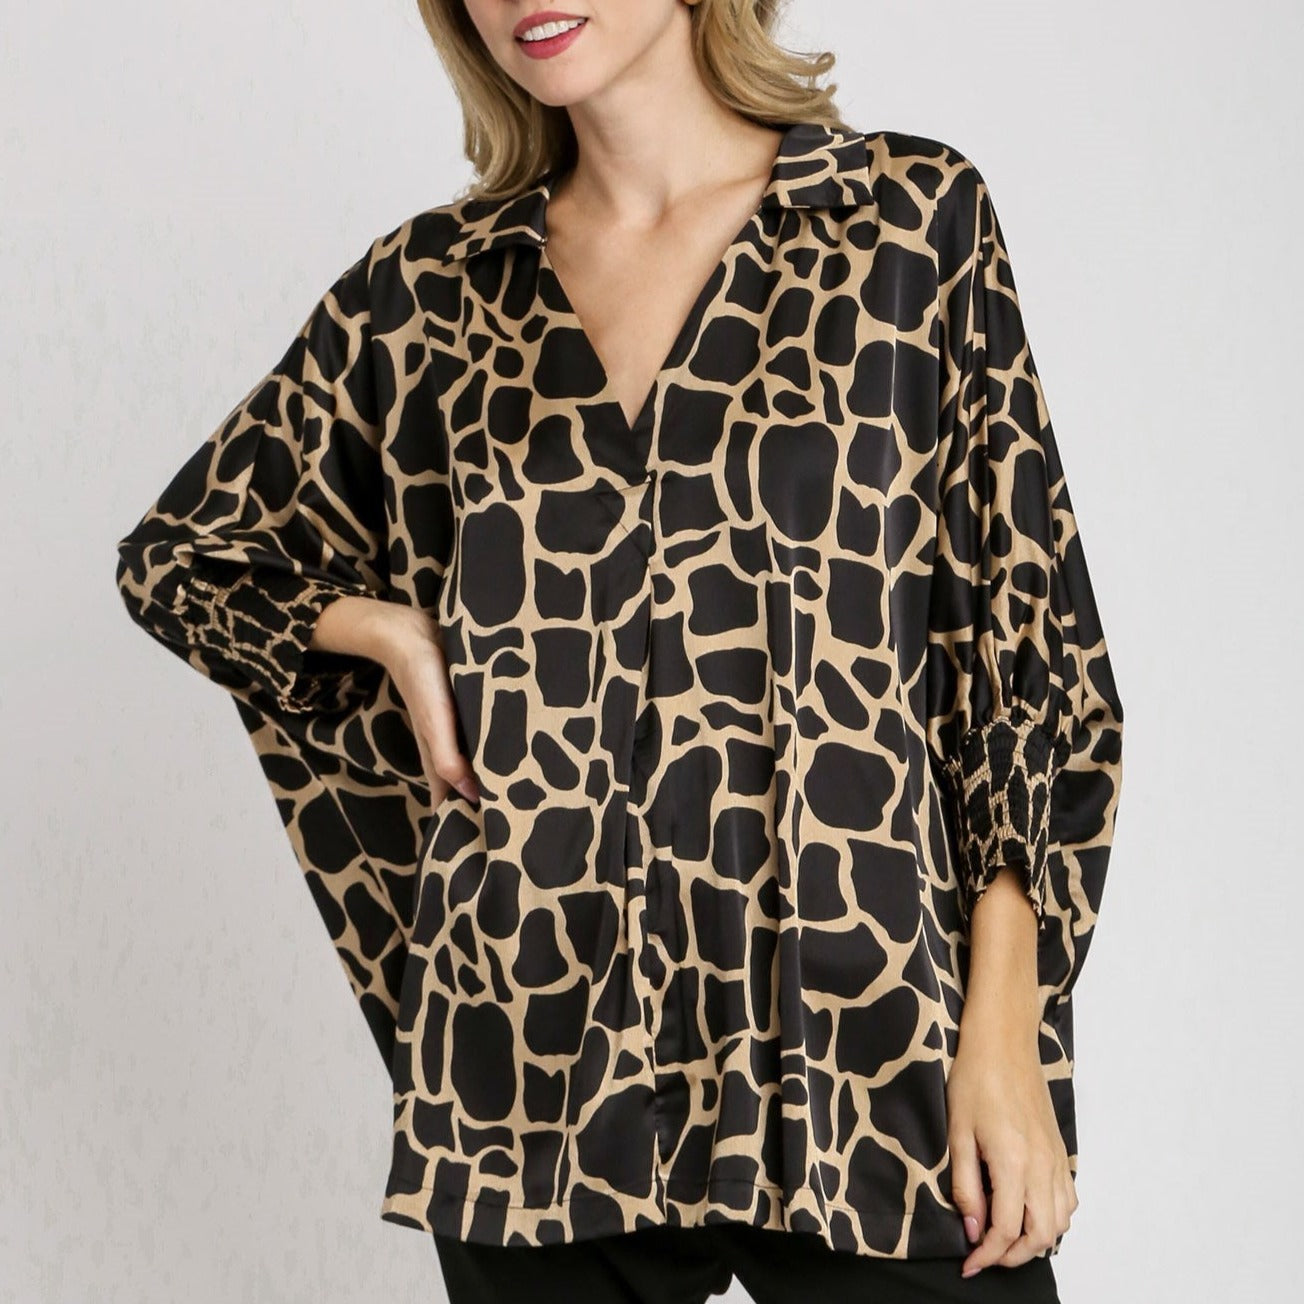 Satin Two Tone Giraffe Print Boxy Cut Oversized Collared Shirt